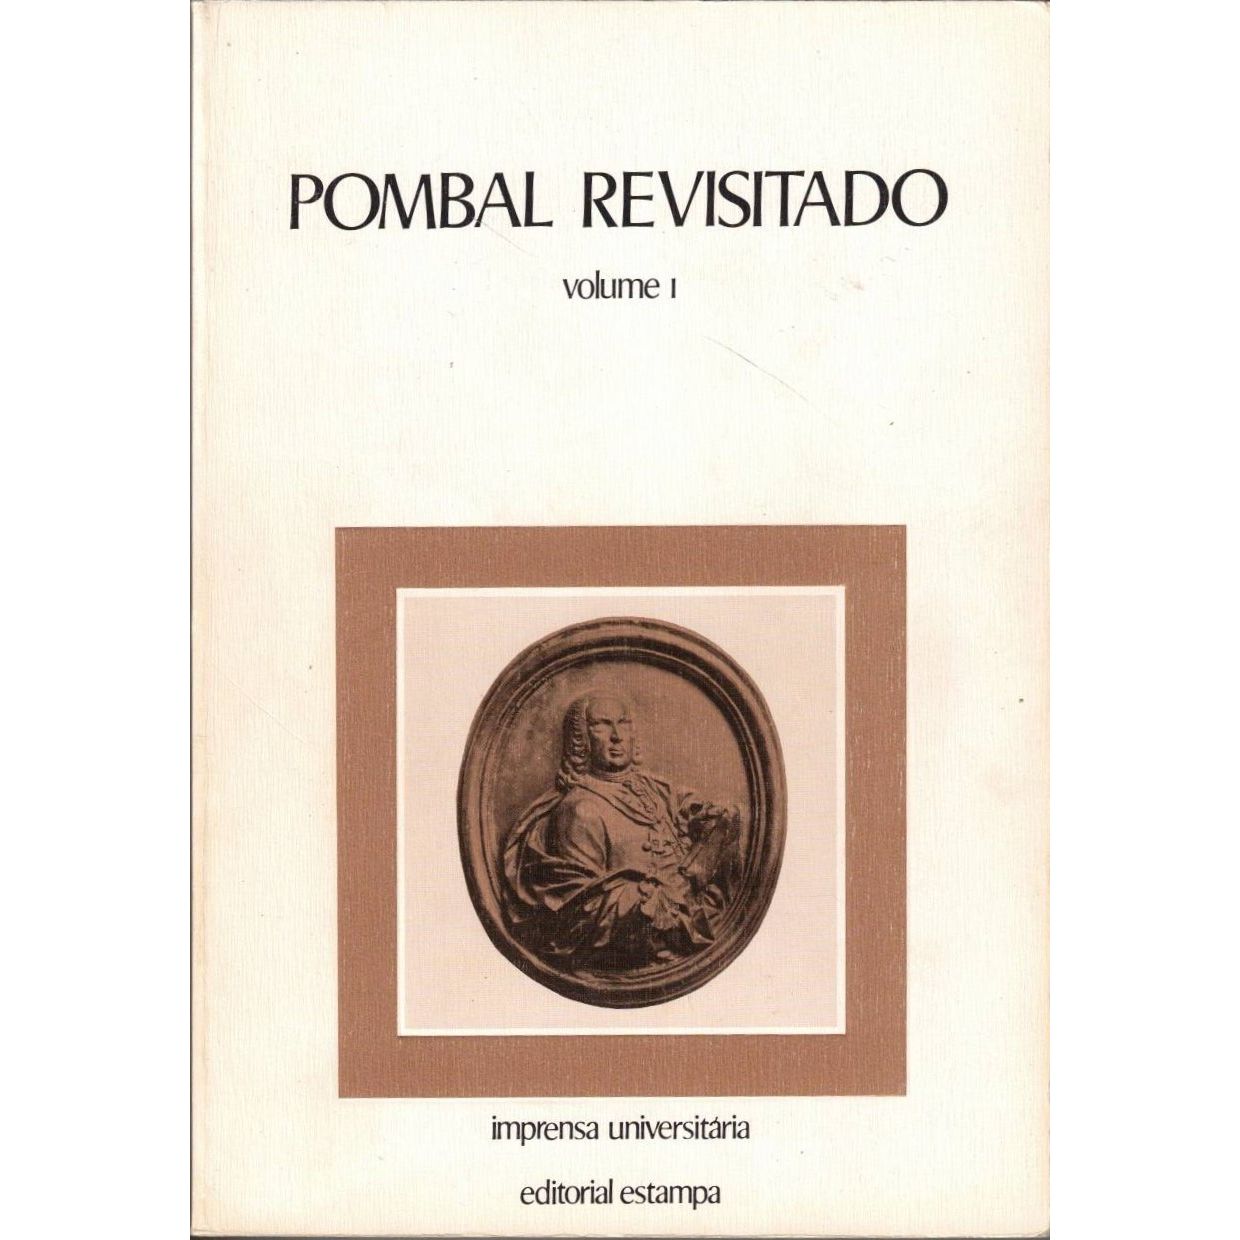 Imagen de portada del libro Pombal revisitado